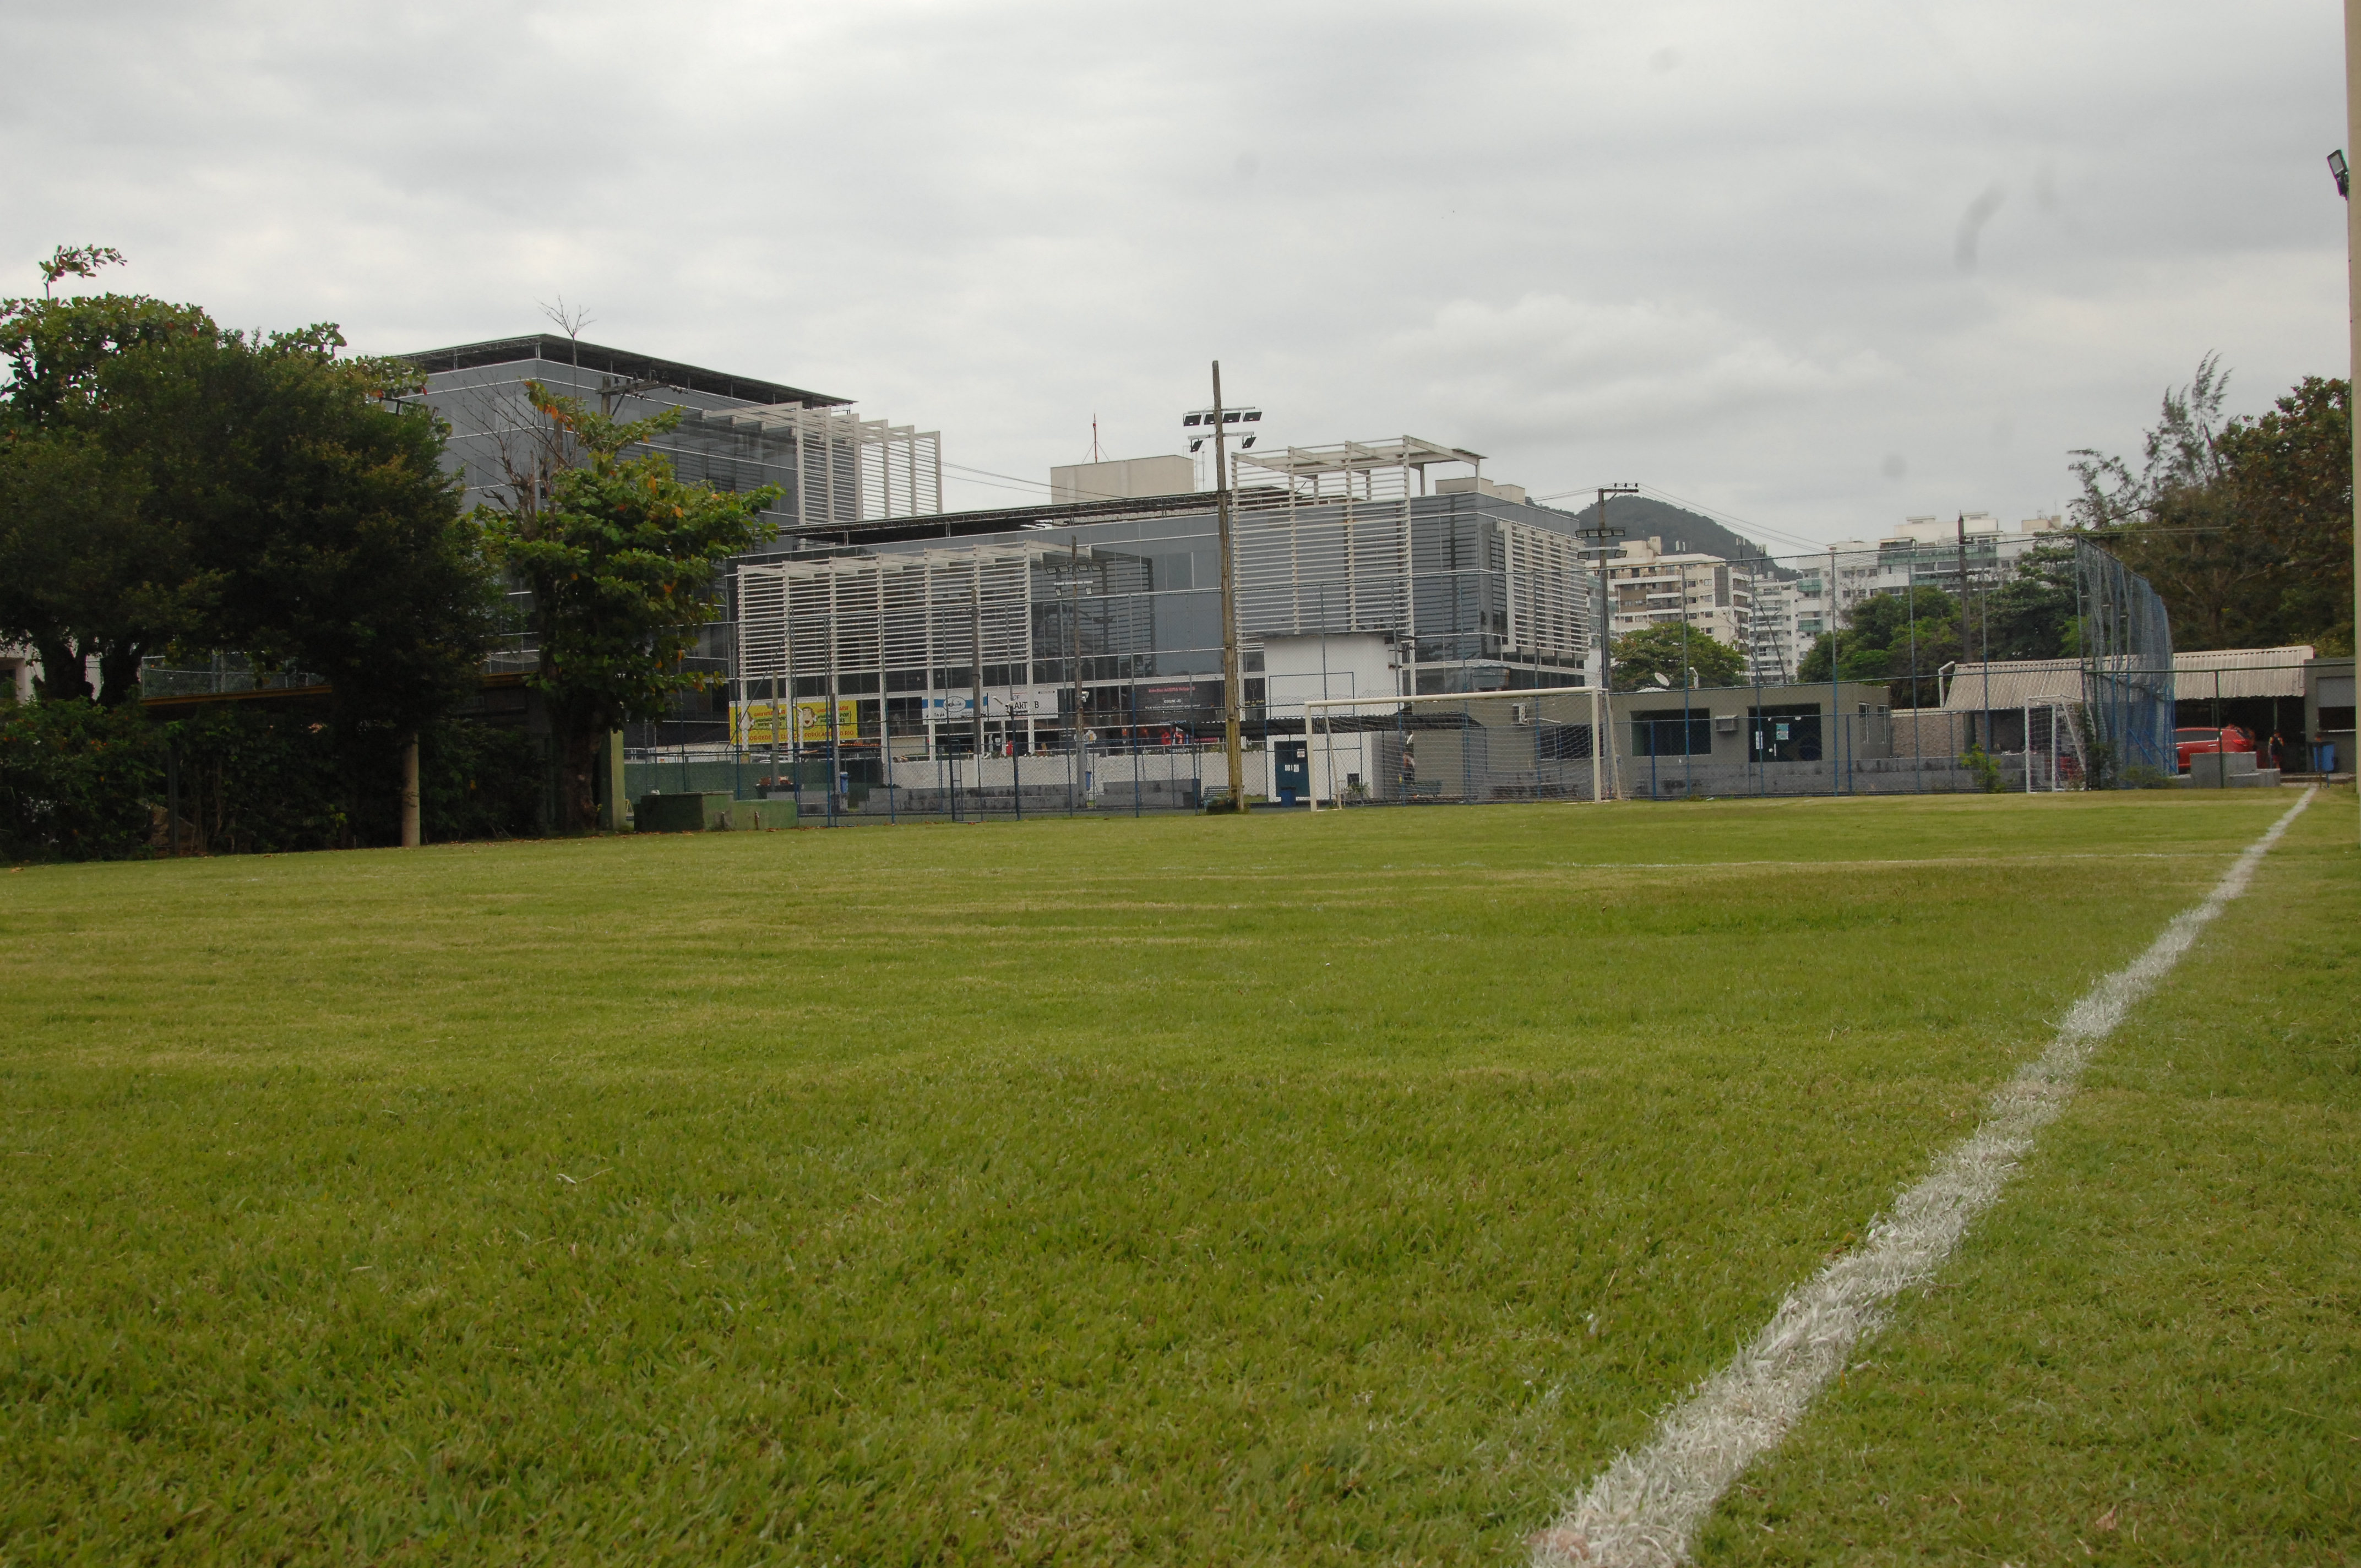 Campo Novo Futebol Clube